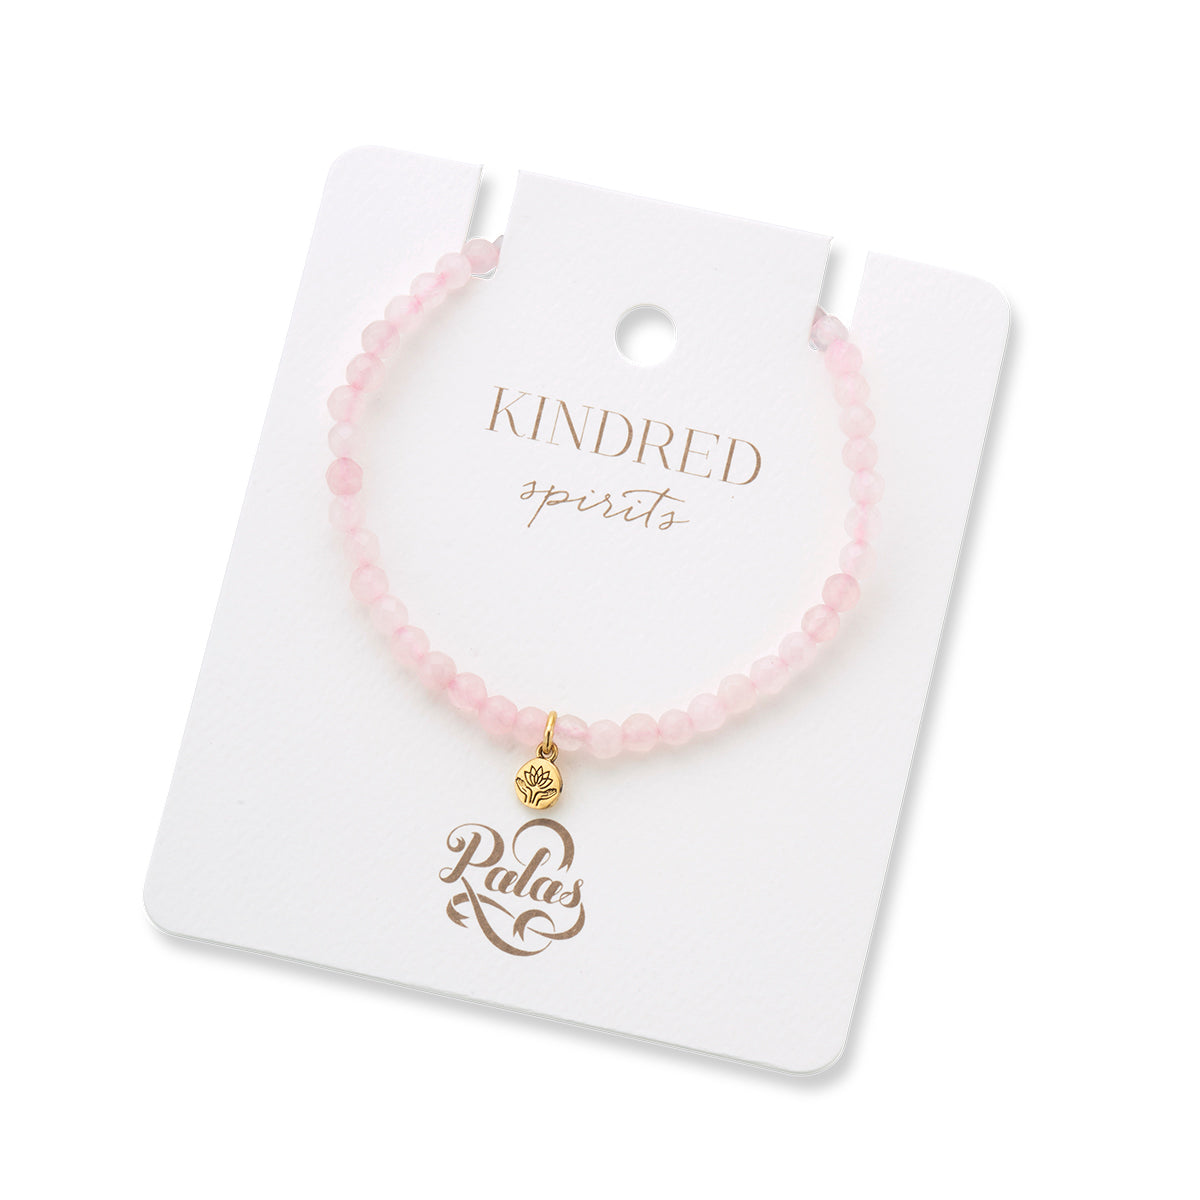 Kindred spirits rose quartz gem bracelet